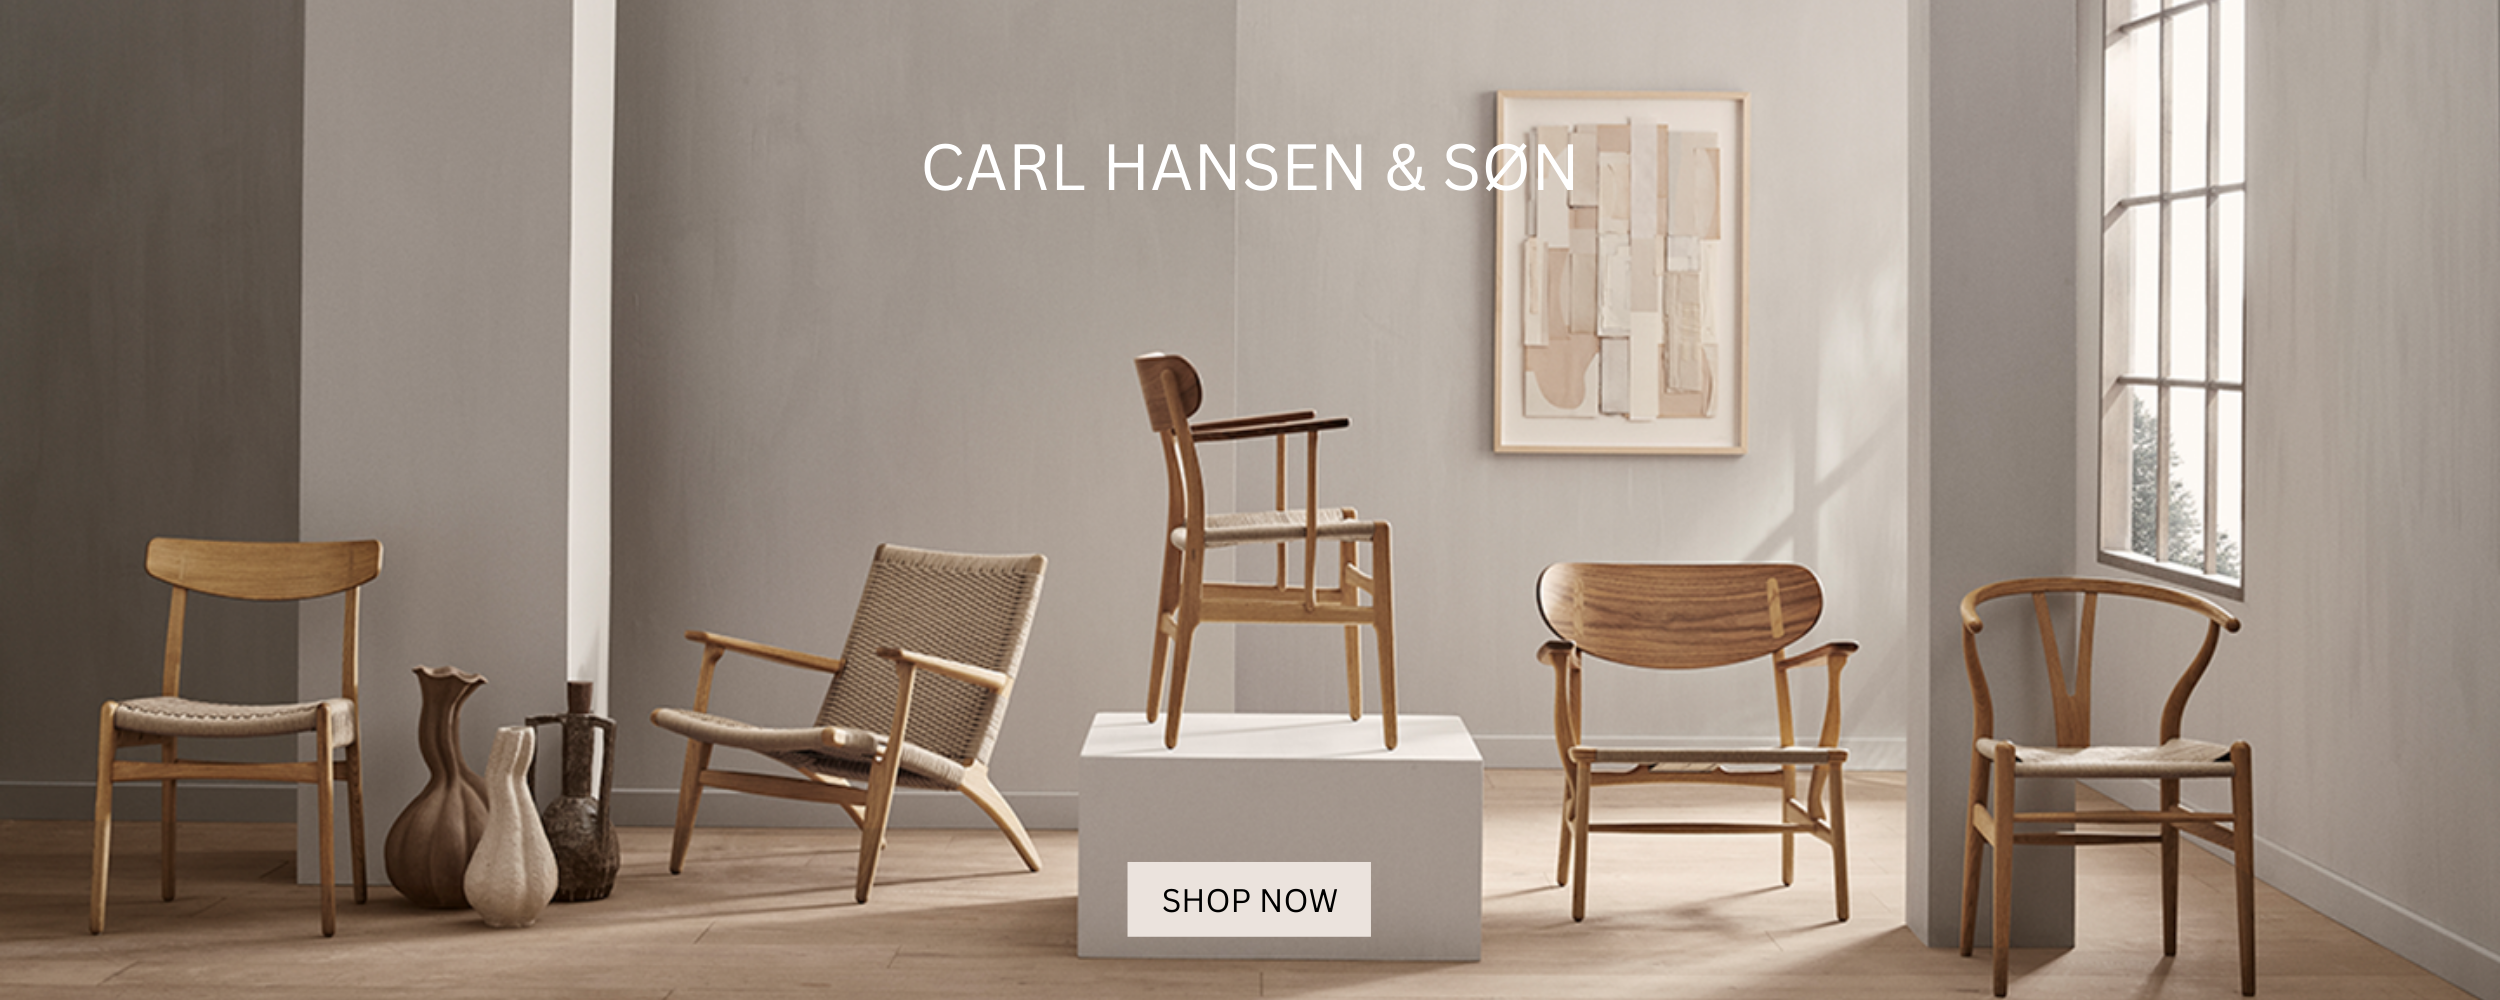 Shoppen Sie die Designklassiker von Carl Hansen im RAUM concept store